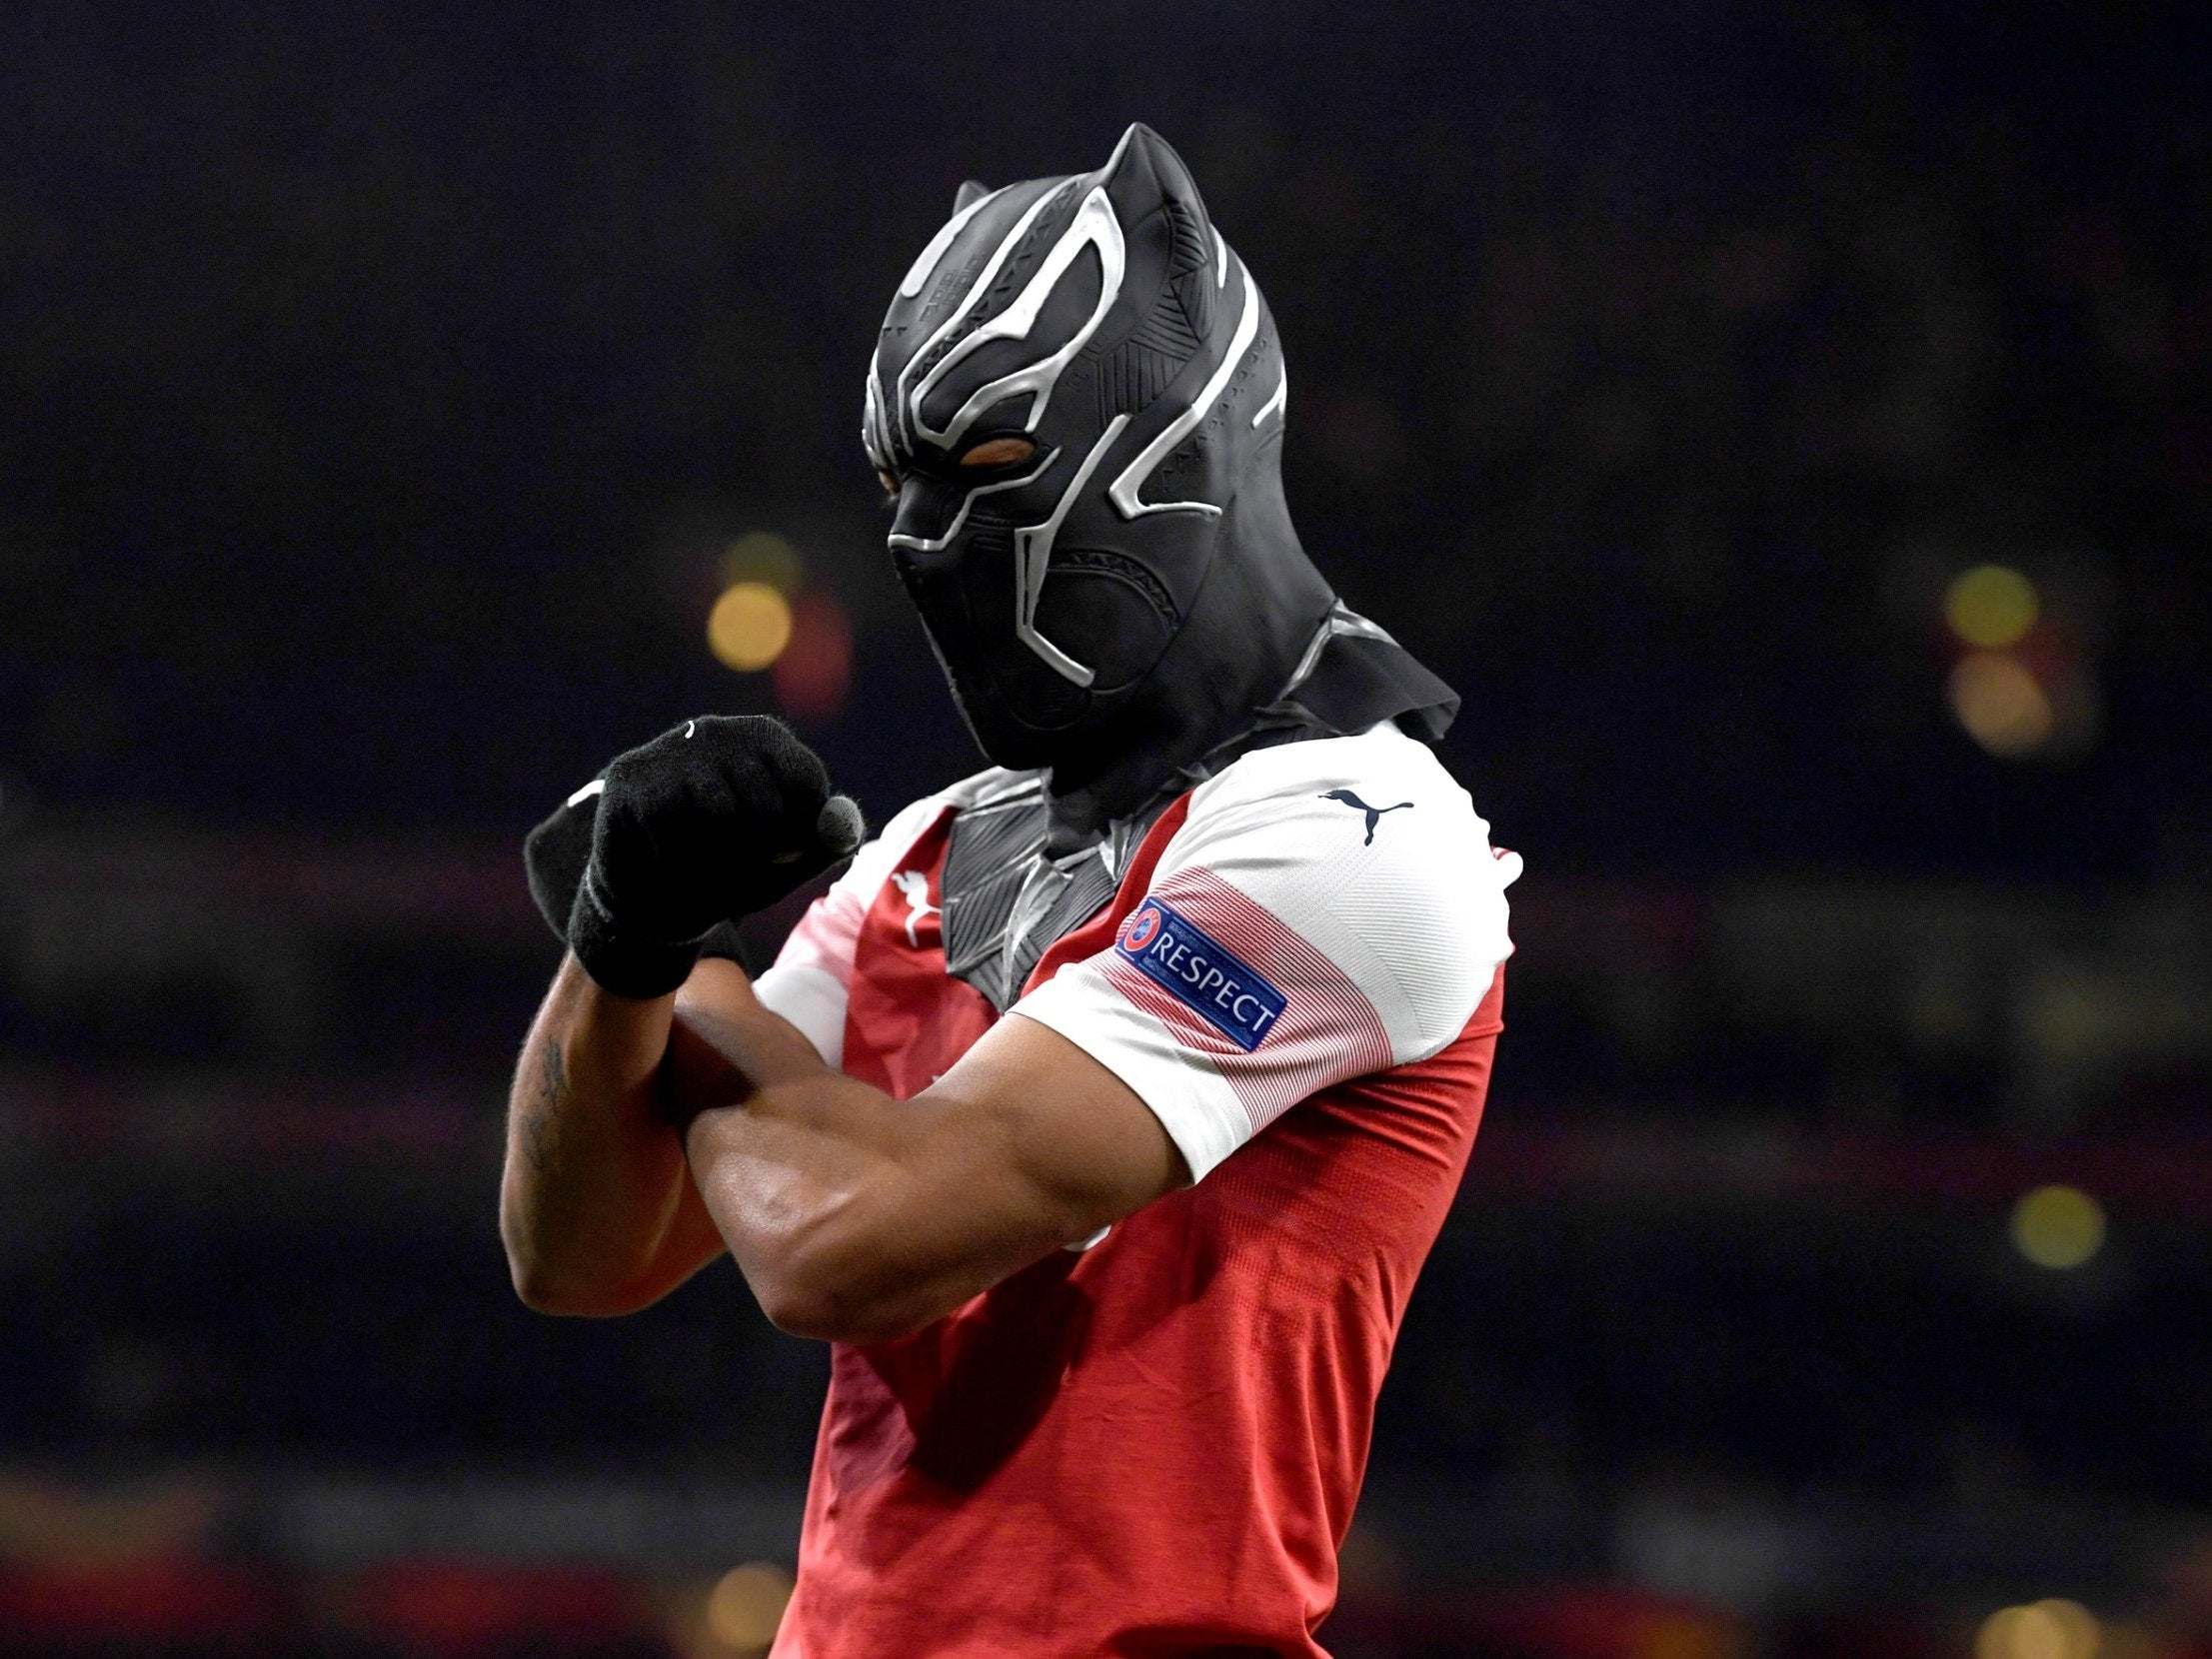 Pierre-Emerick Aubameyang celebrates scoring Arsenal's third